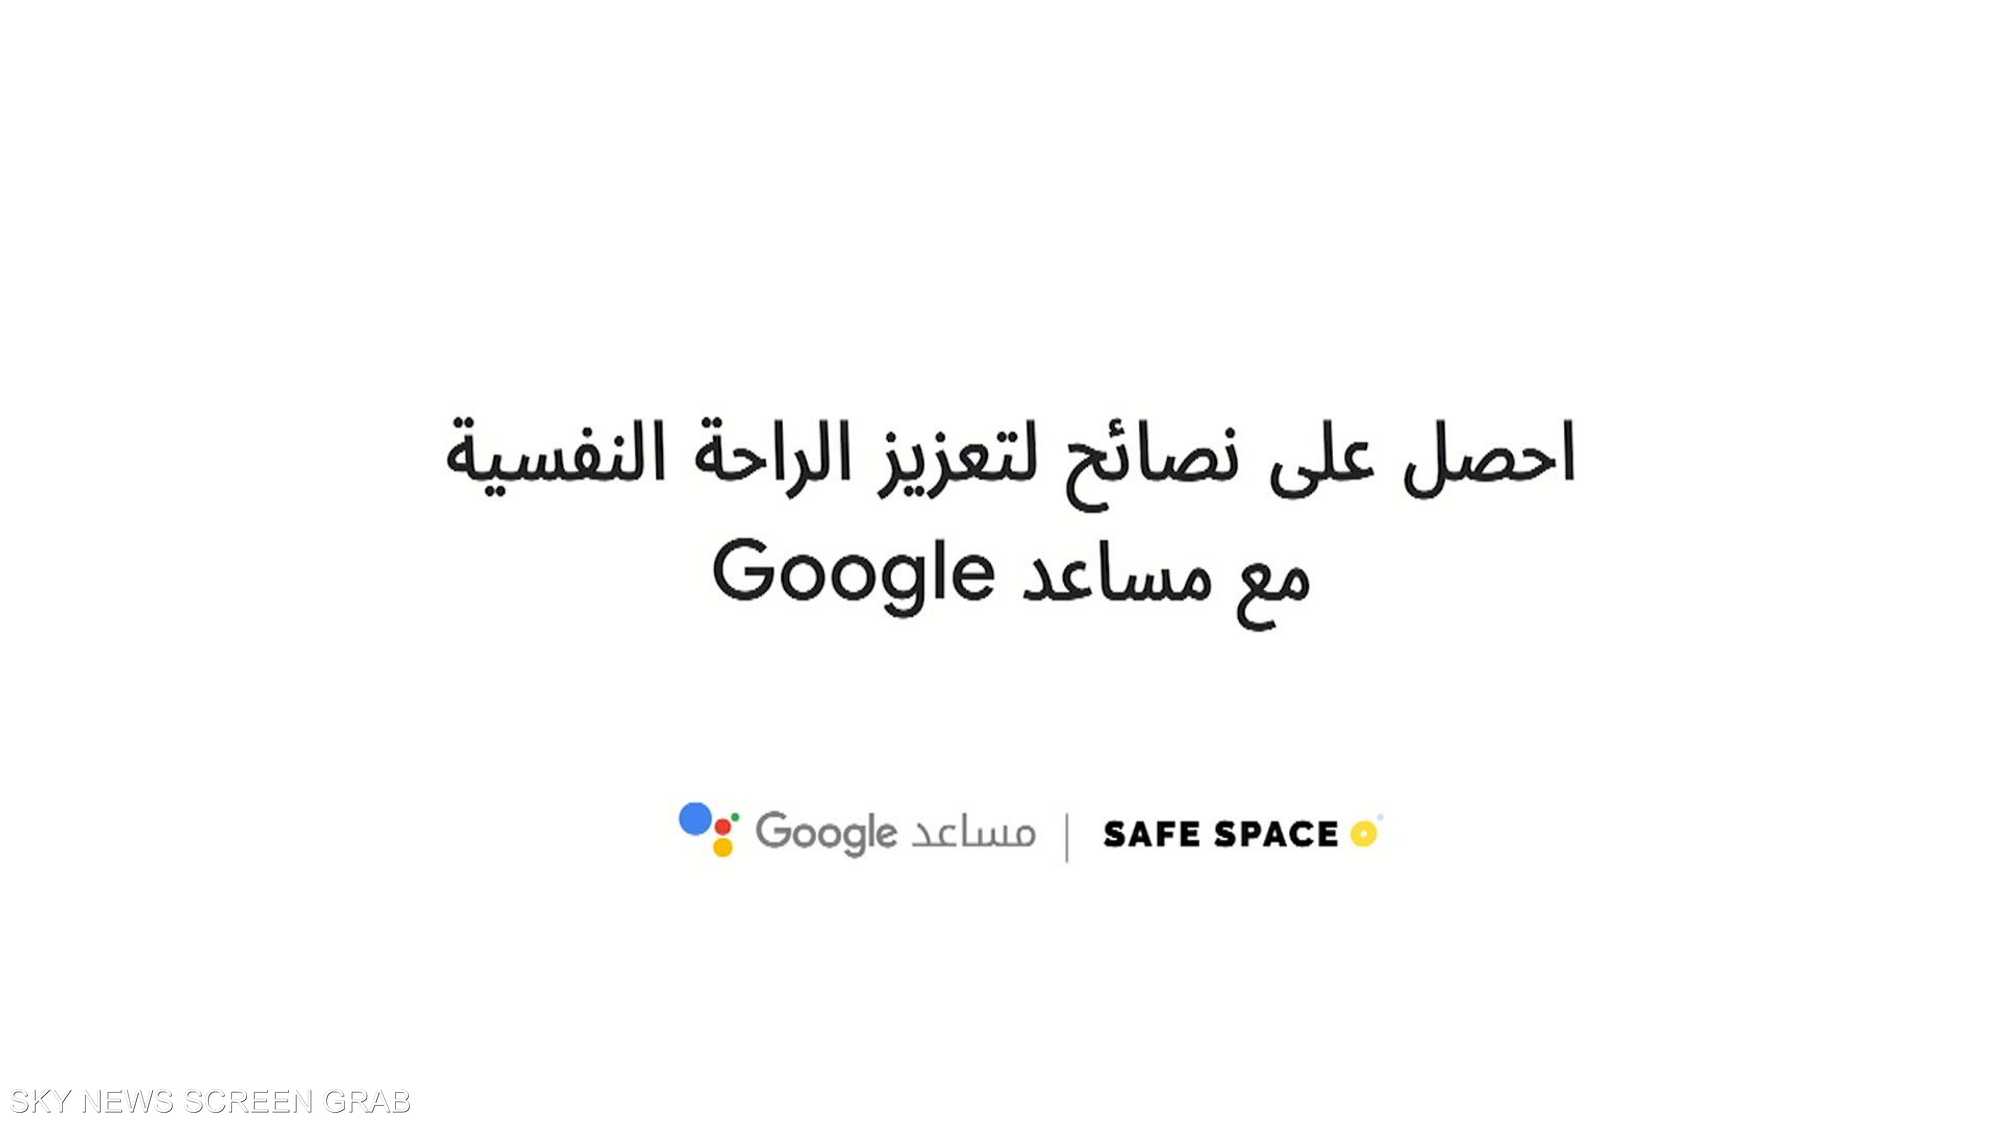 مقترحات دقيقة لتعزيز الصحة النفسية تقدمها غوغل بالعربية